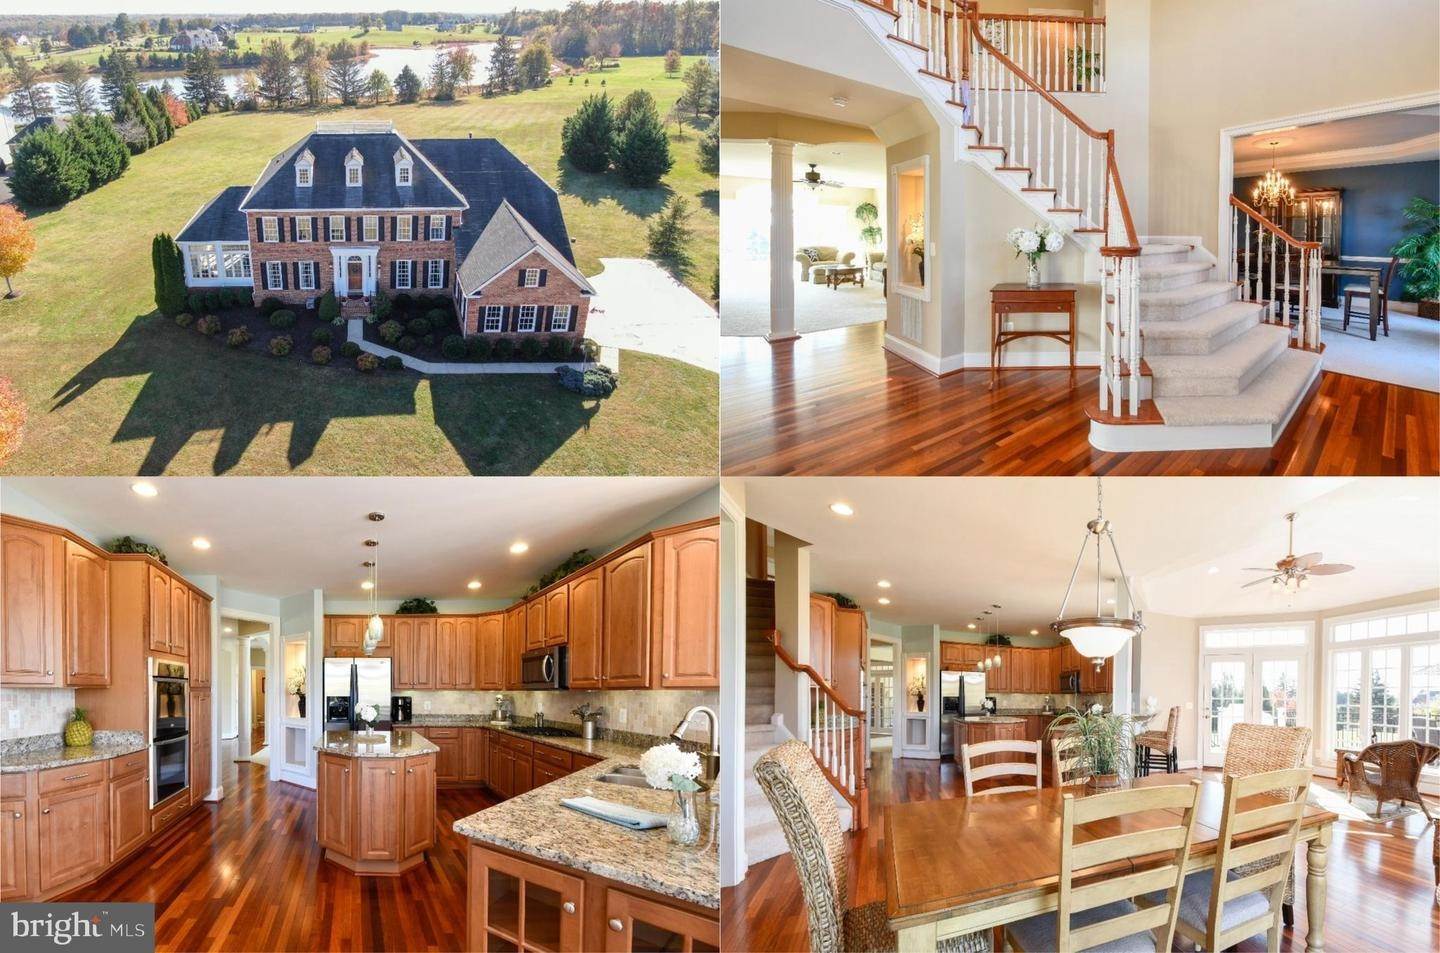 Single Family Homes für Verkauf beim Nokesville, Virginia 20181 Vereinigte Staaten